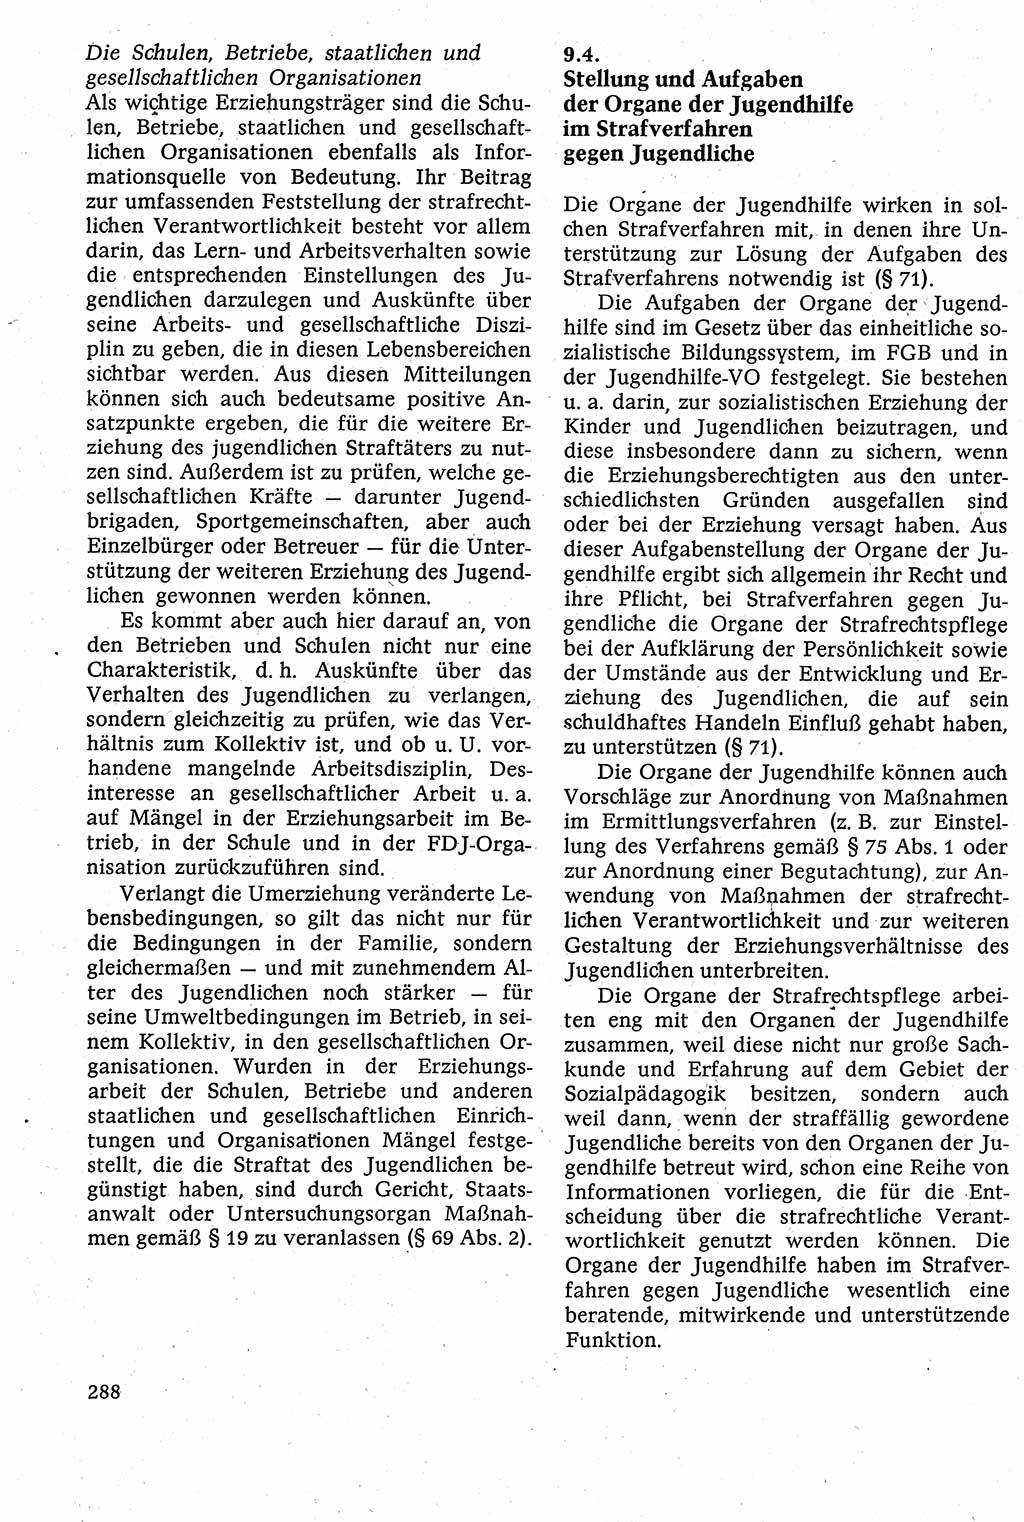 Strafverfahrensrecht [Deutsche Demokratische Republik (DDR)], Lehrbuch 1982, Seite 288 (Strafverf.-R. DDR Lb. 1982, S. 288)